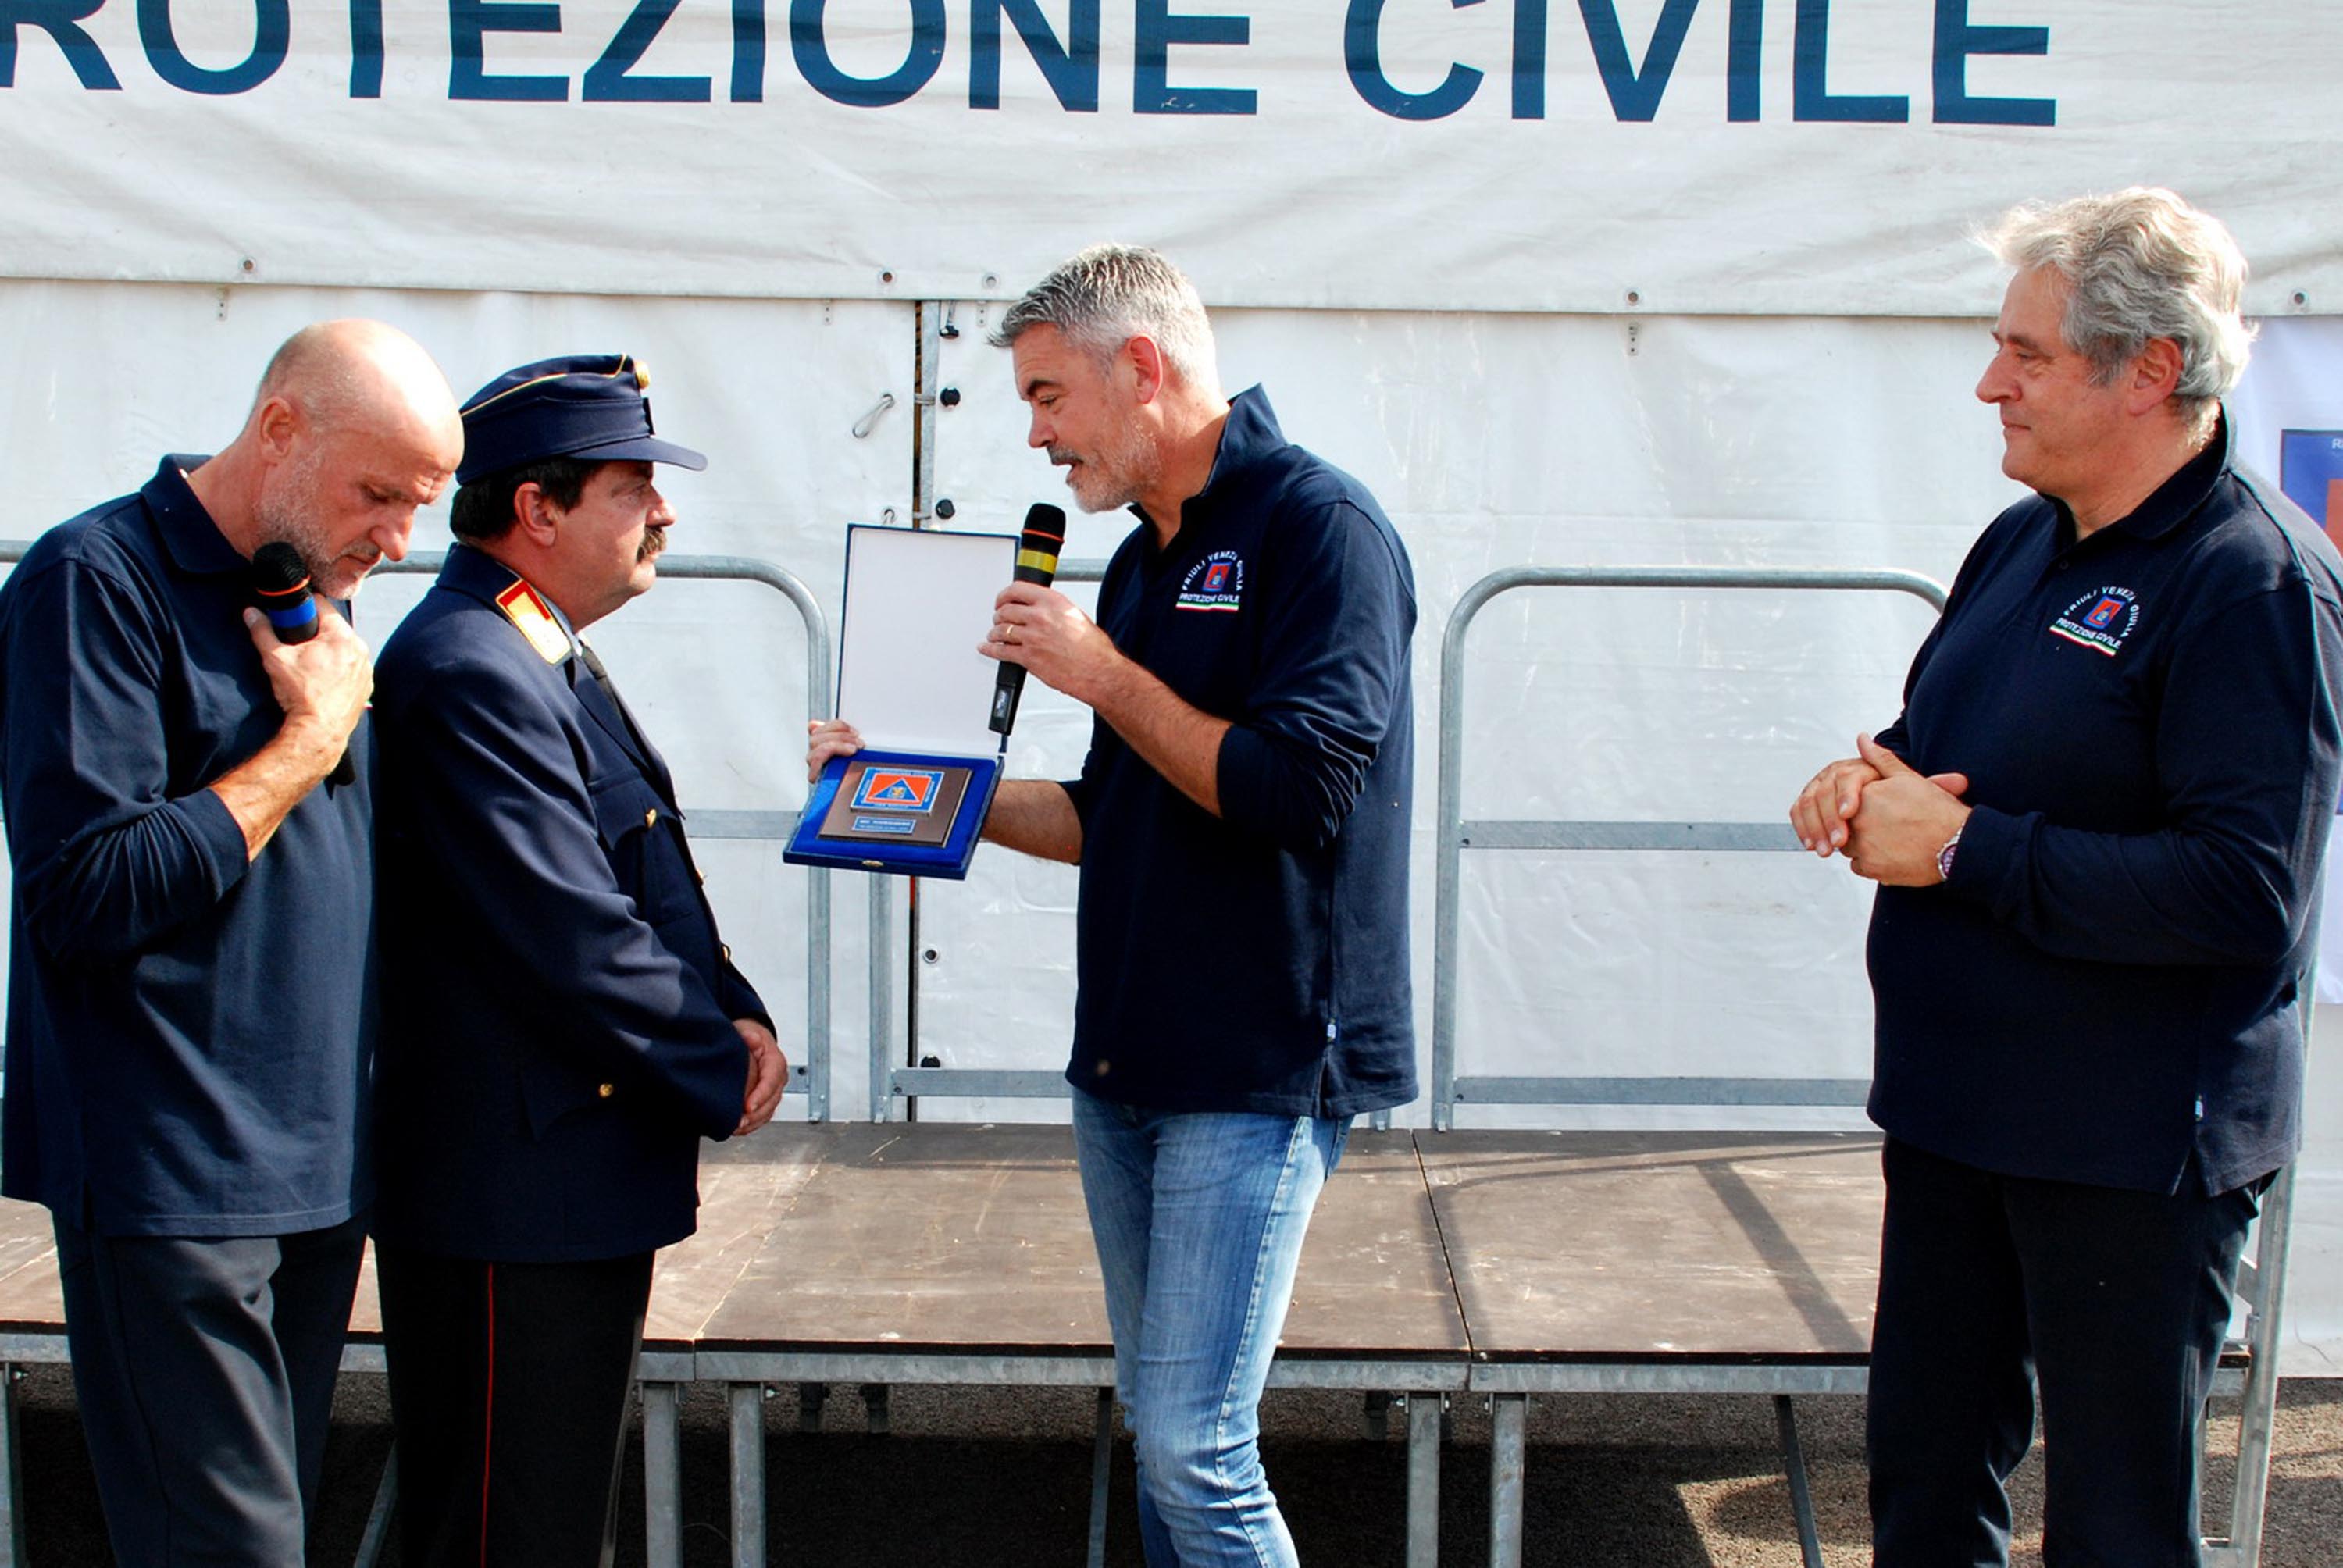 Paolo Panontin (Assessore regionale Protezione civile) ringrazia gli operatori italiani e carinziani per il lavoro di spegnimento degli incendi che hanno interessato il FVG quest'estate. (Palmanova 21/09/13)